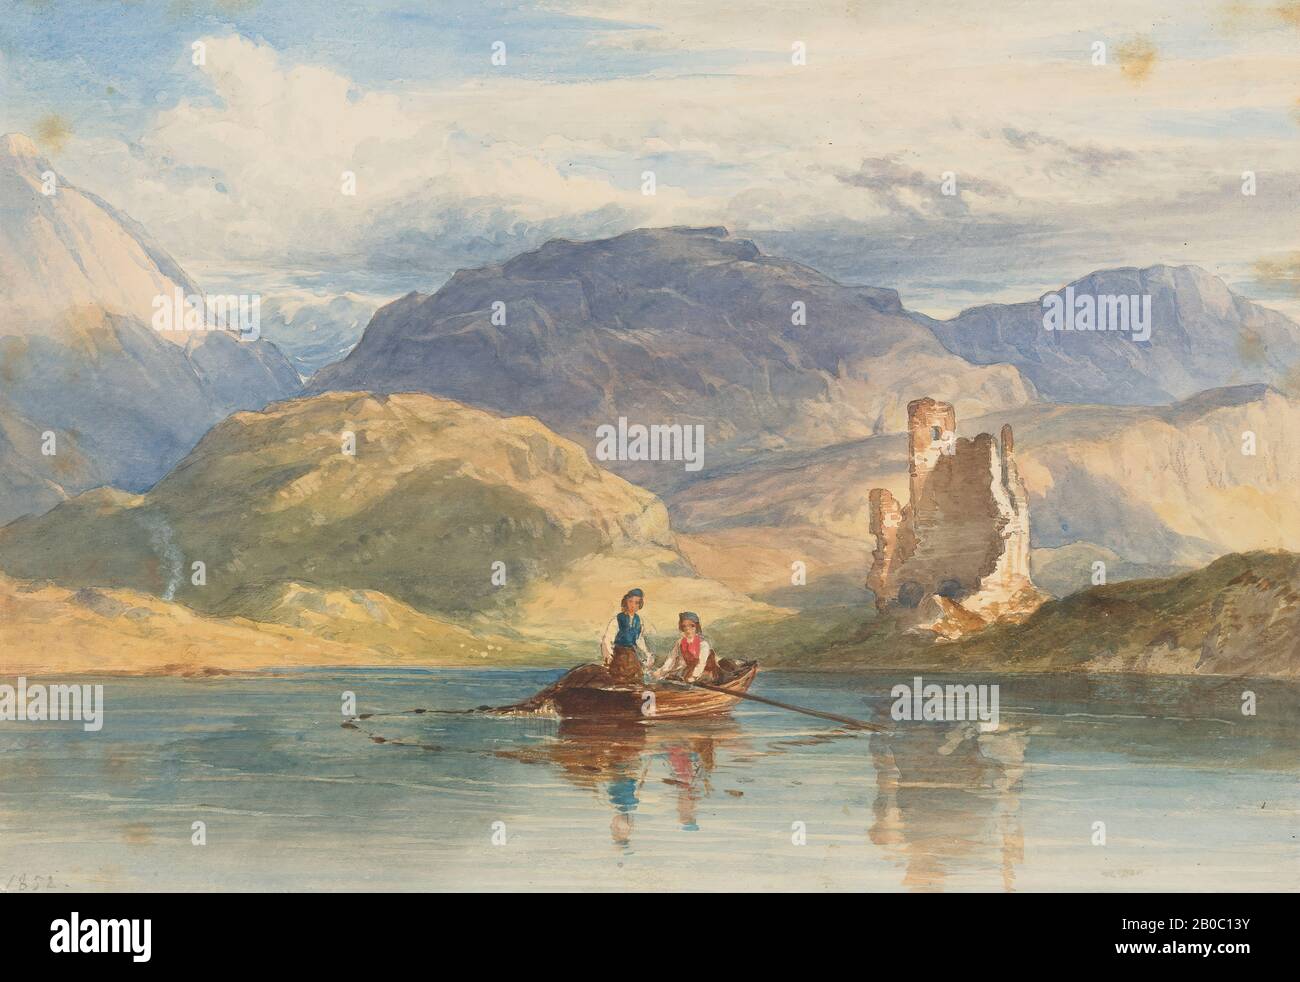 Artiste inconnu, Highland Lake avec ruines, 1852, aquarelle sur papier Banque D'Images